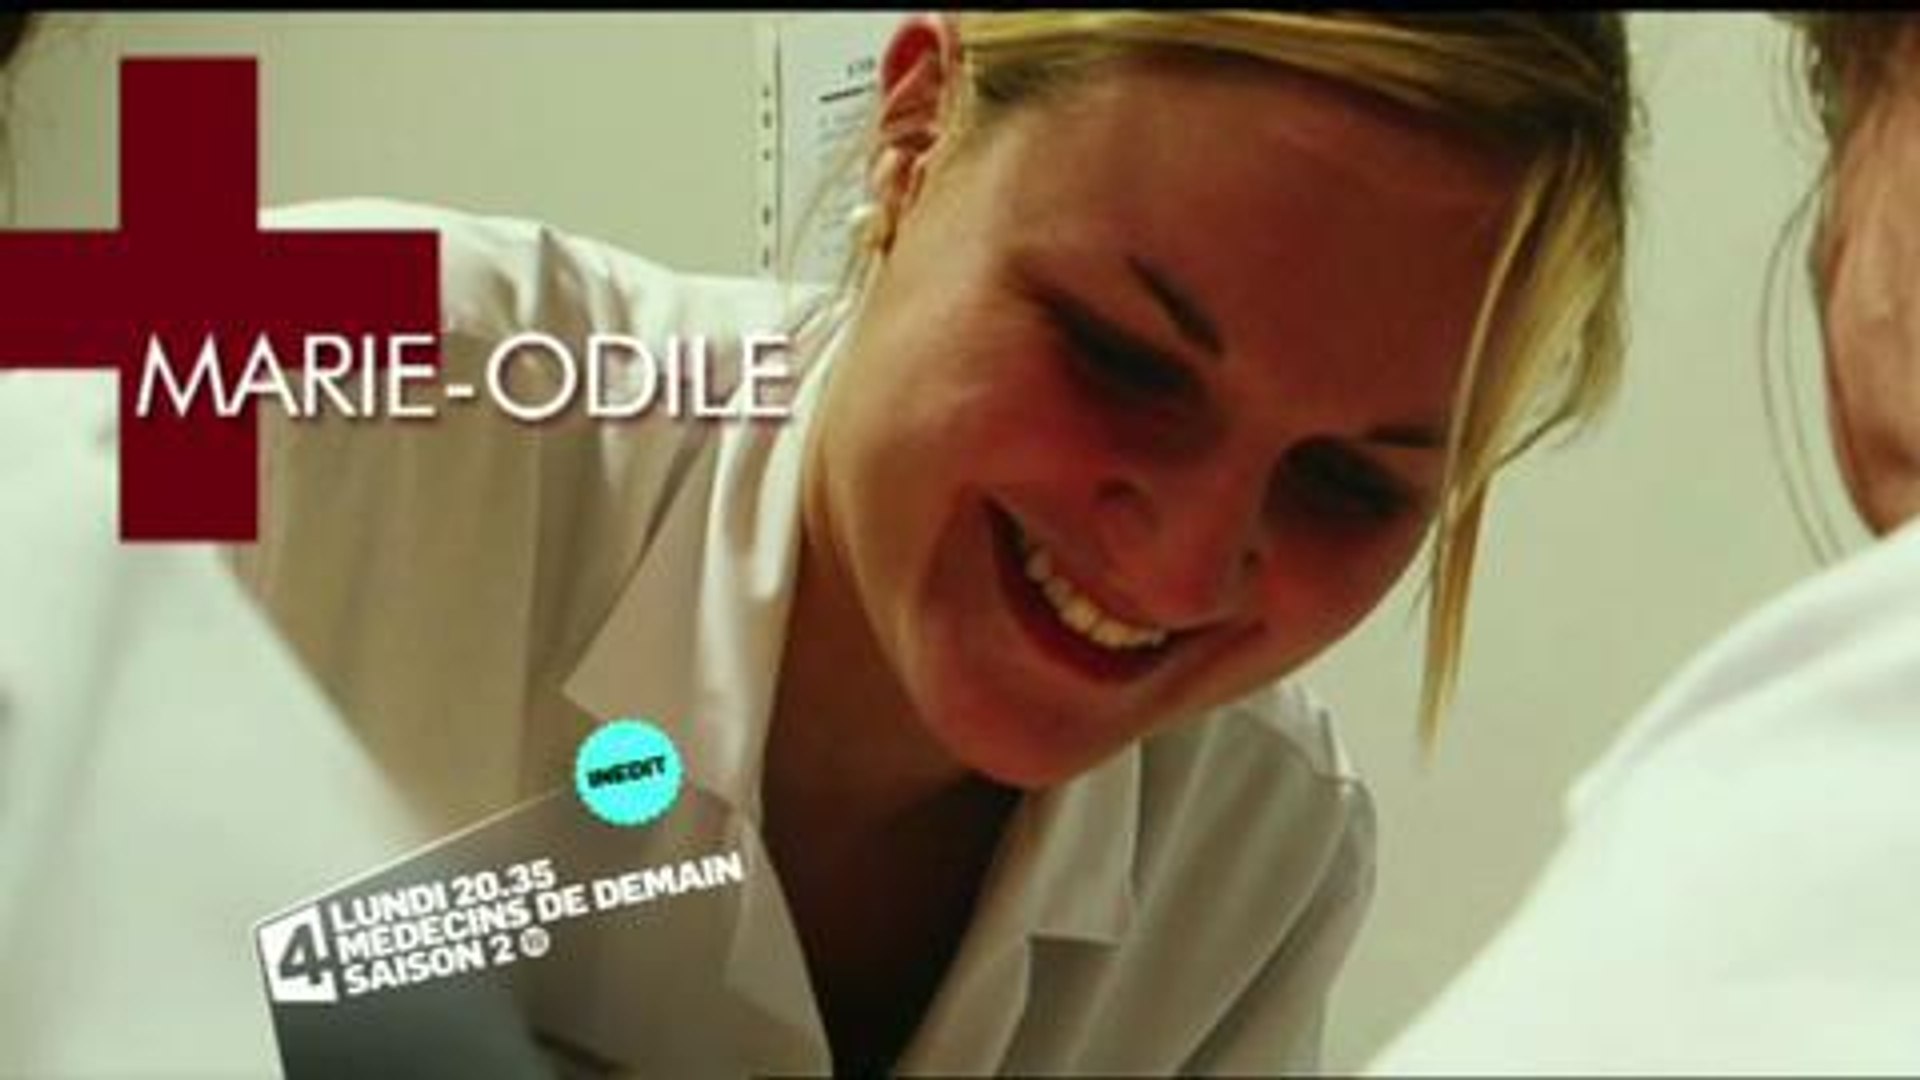 Médecins de demain (France 4) Bande-annonce 18 juin - Vidéo Dailymotion